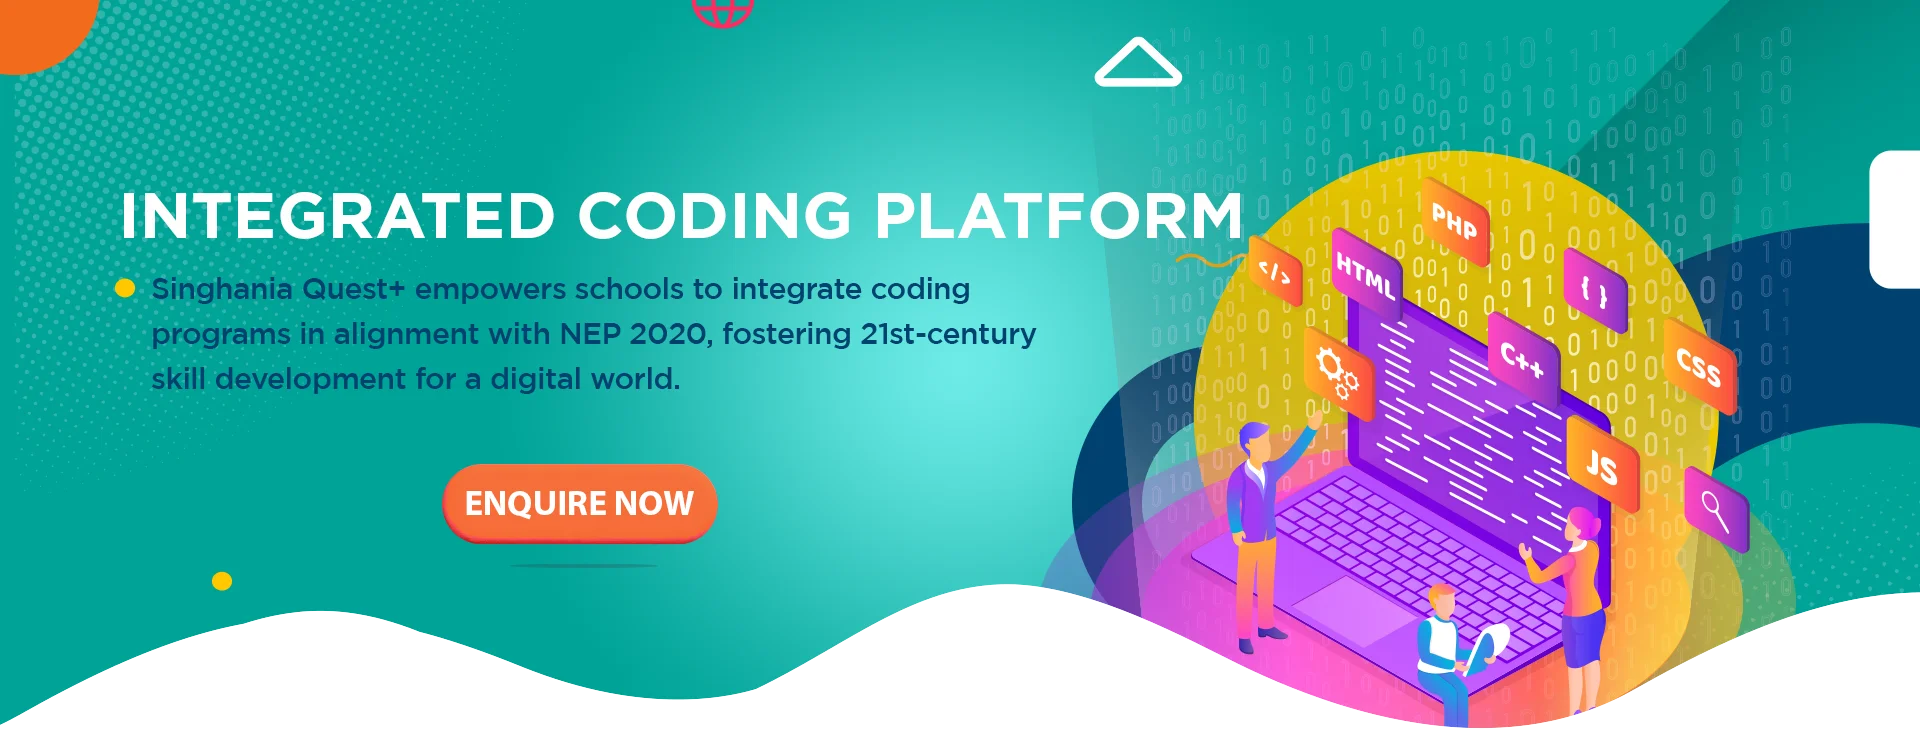 Integrated coding platform banner